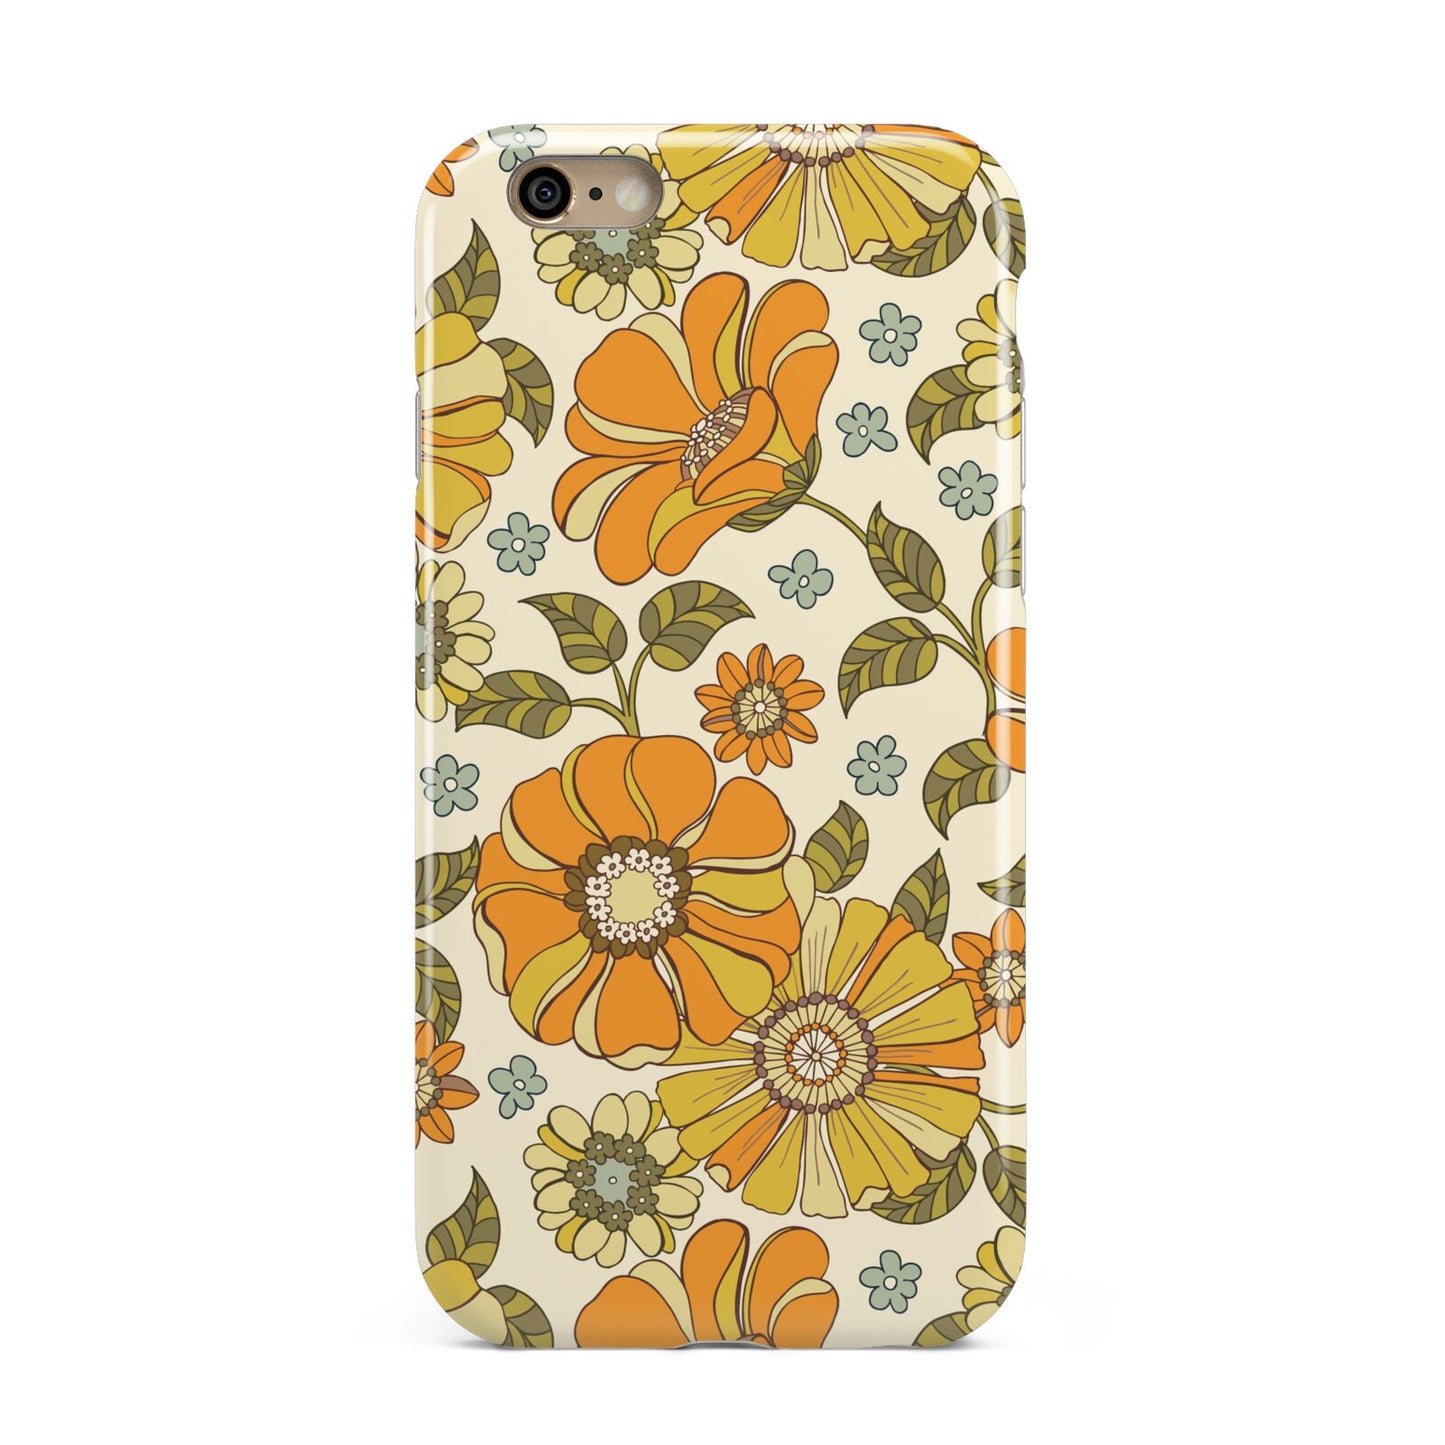 Vintage Floral Apple iPhone 6 3D Tough Case